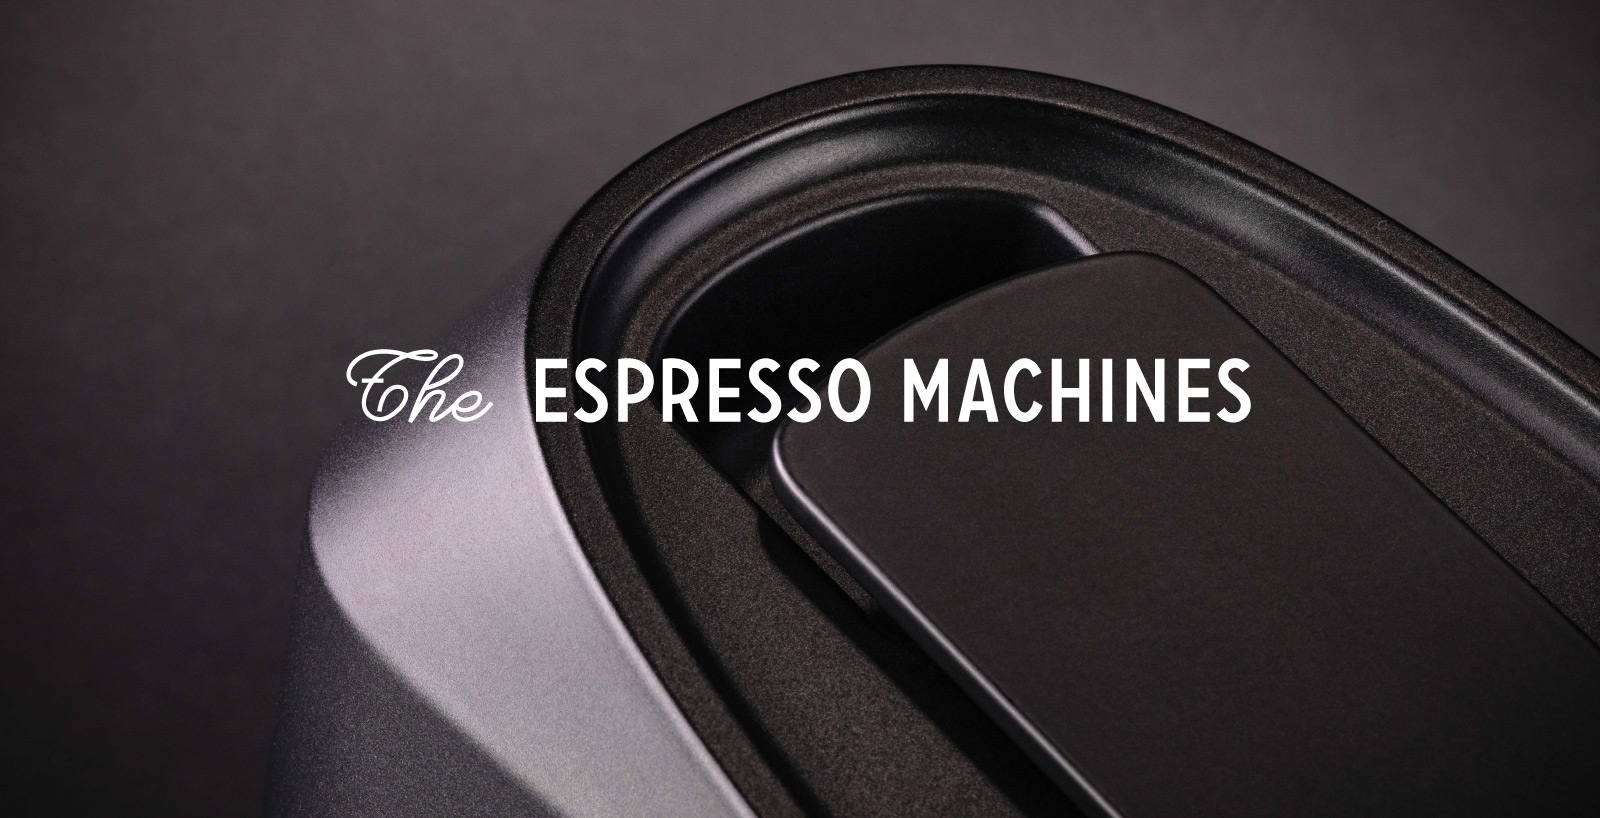 Le macchineThe espresso machines